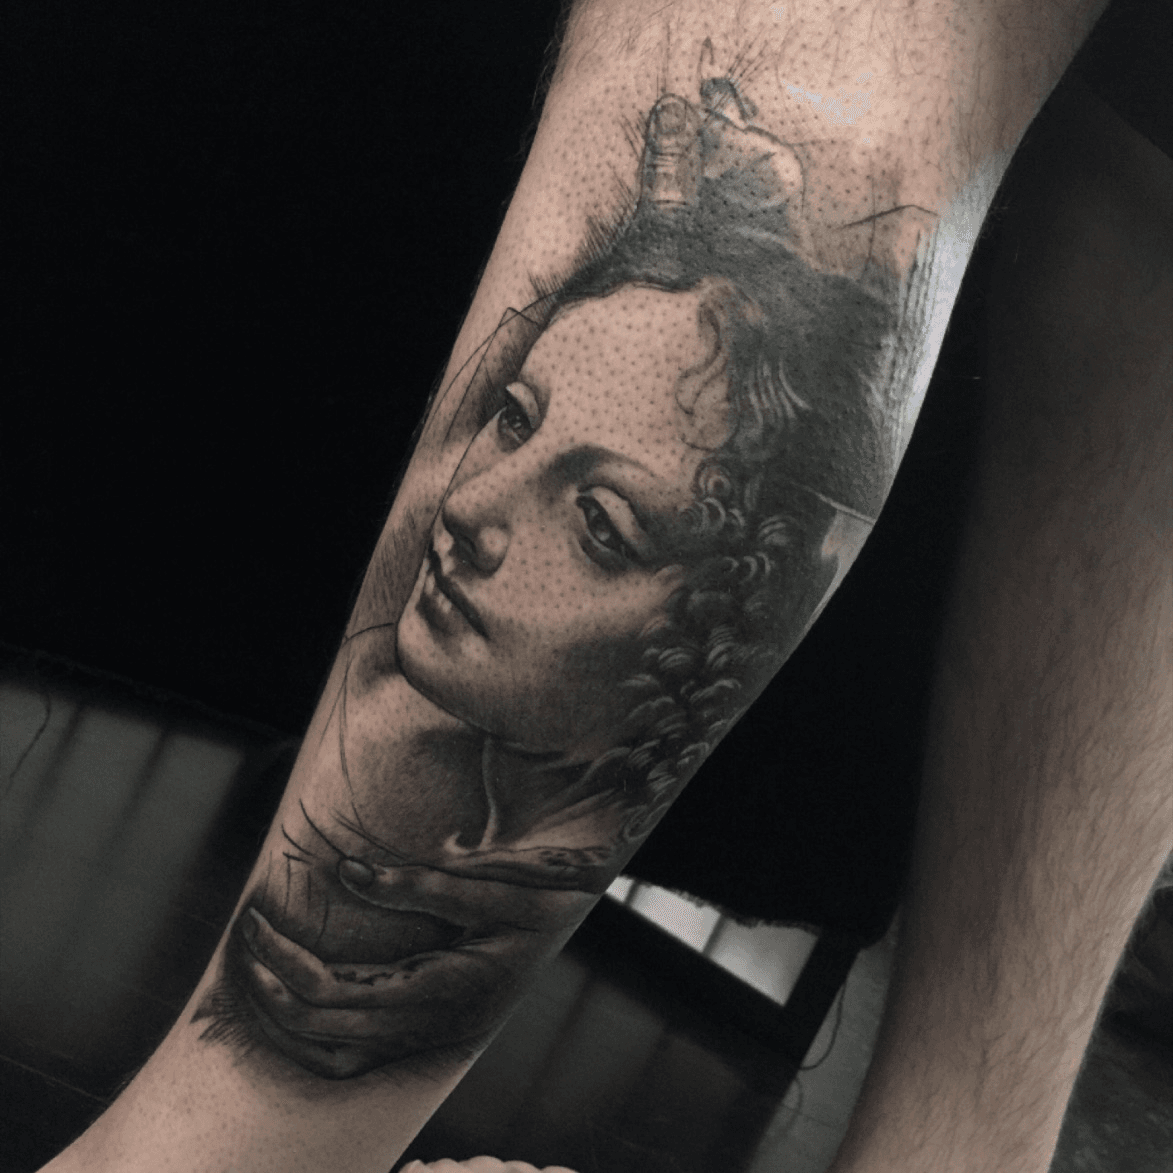 Tattoo uploaded by Tattoodo • Black and grey realism tattoo by Josh Lin  #JoshLin #TattoodoApp #TattoodoApptattooartist #tattooartist #tattooart  #tattooidea #inspiringtattoo #besttattoo #awesometattoo #Blackandgrey  #realism #hyperrealism #compass #car